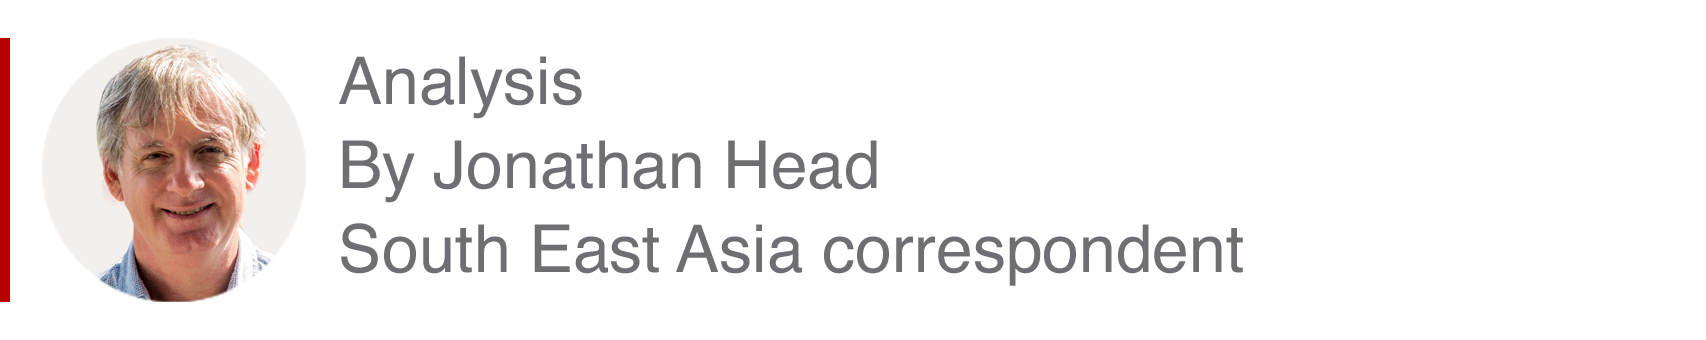 Аналитический блок Джонатана Хэда, корреспондента по Юго-Восточной Азии